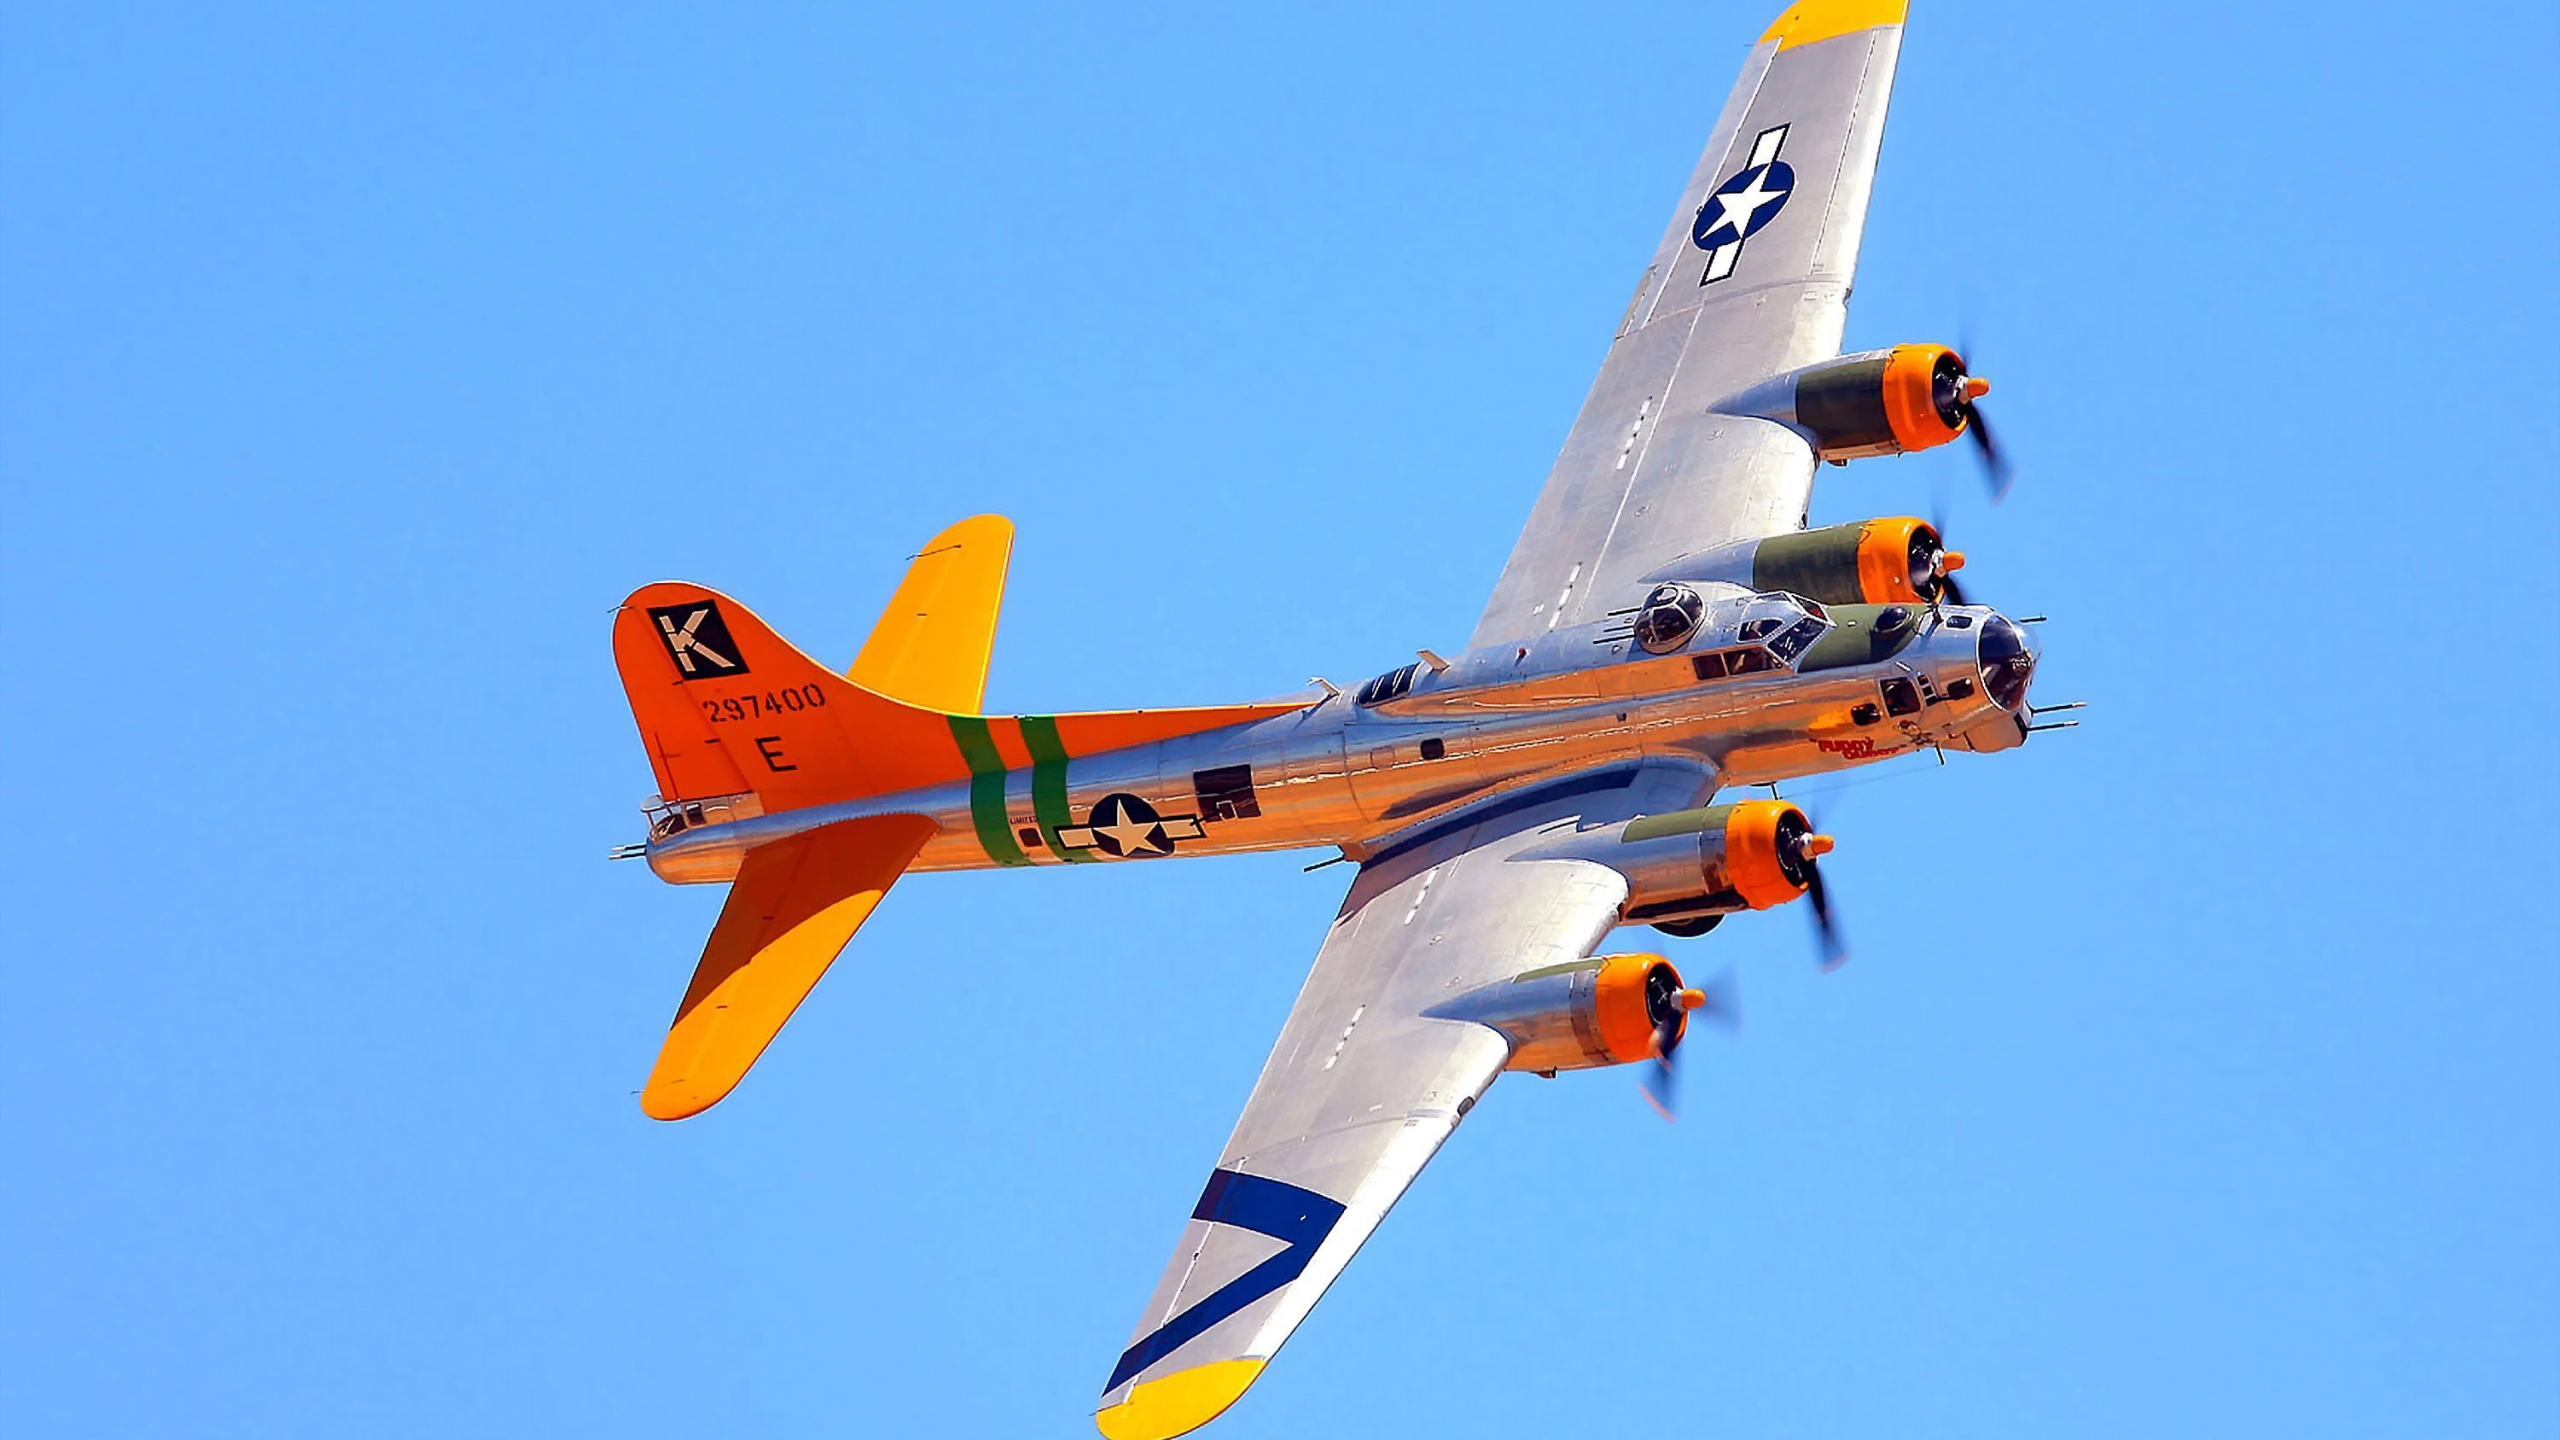 波音公司b-17飞行堡垒, 军用飞机, 航空, 螺旋桨, 航班 壁纸 2560x1440 允许